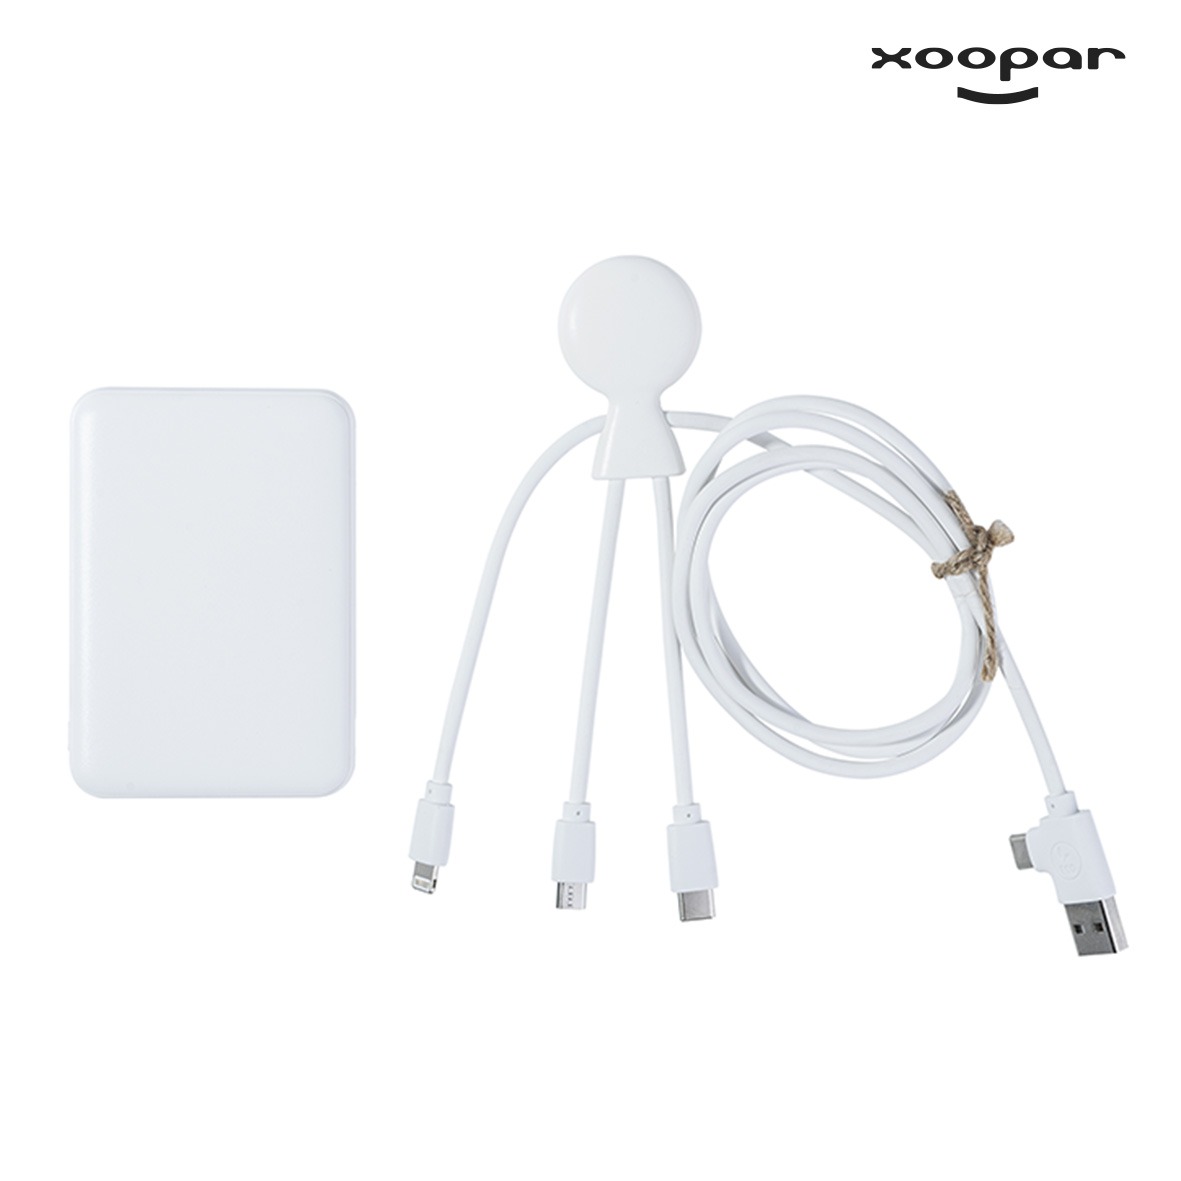 batterie chargeur et cables eco xoopar personnalise-2